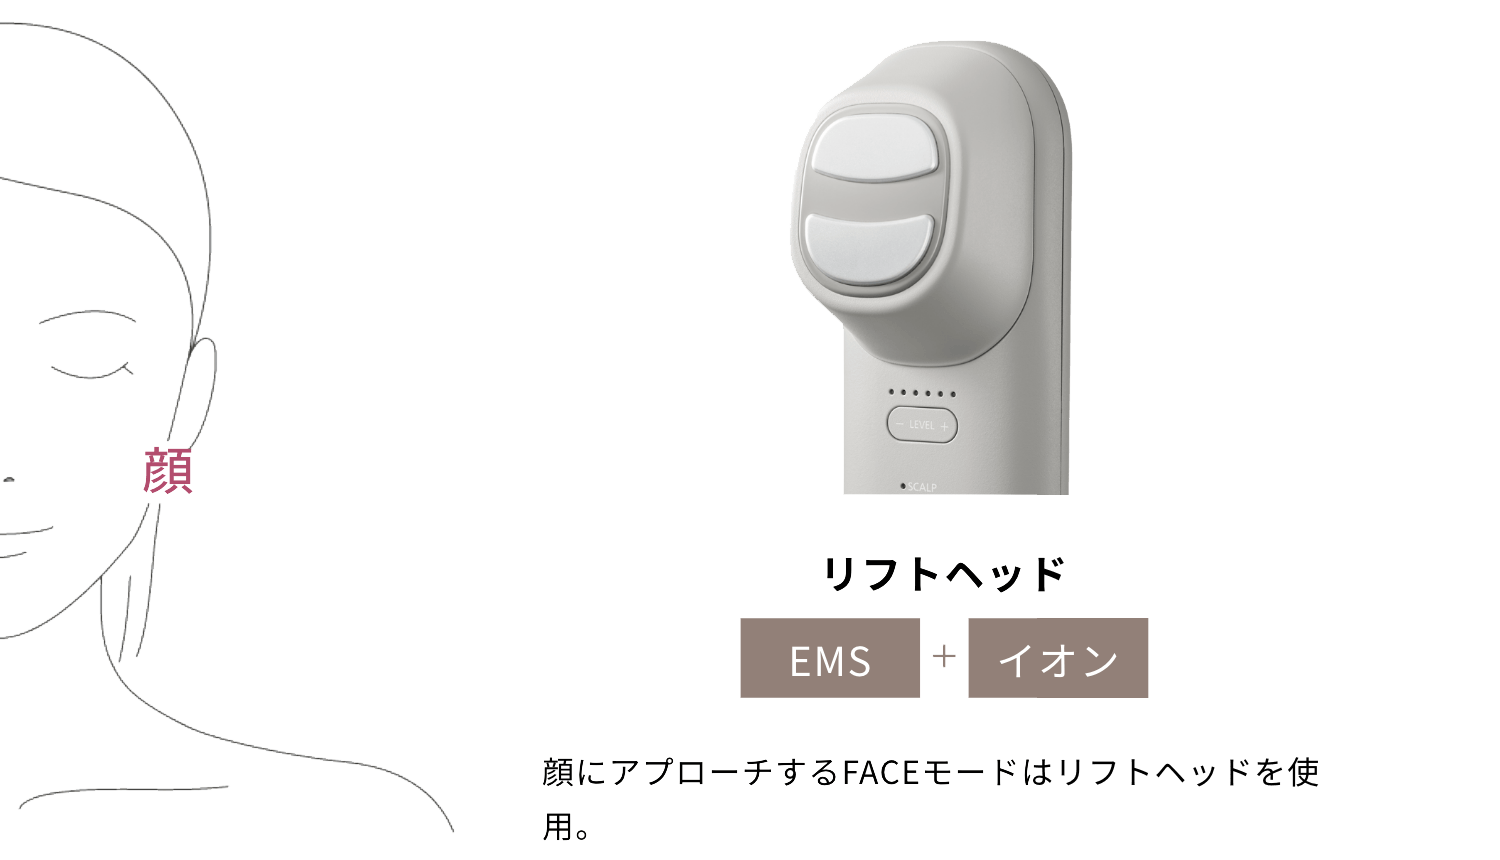 リフトヘッド EMS+イオン 顔にアプローチするFACEモードはリフトヘッドを使用。